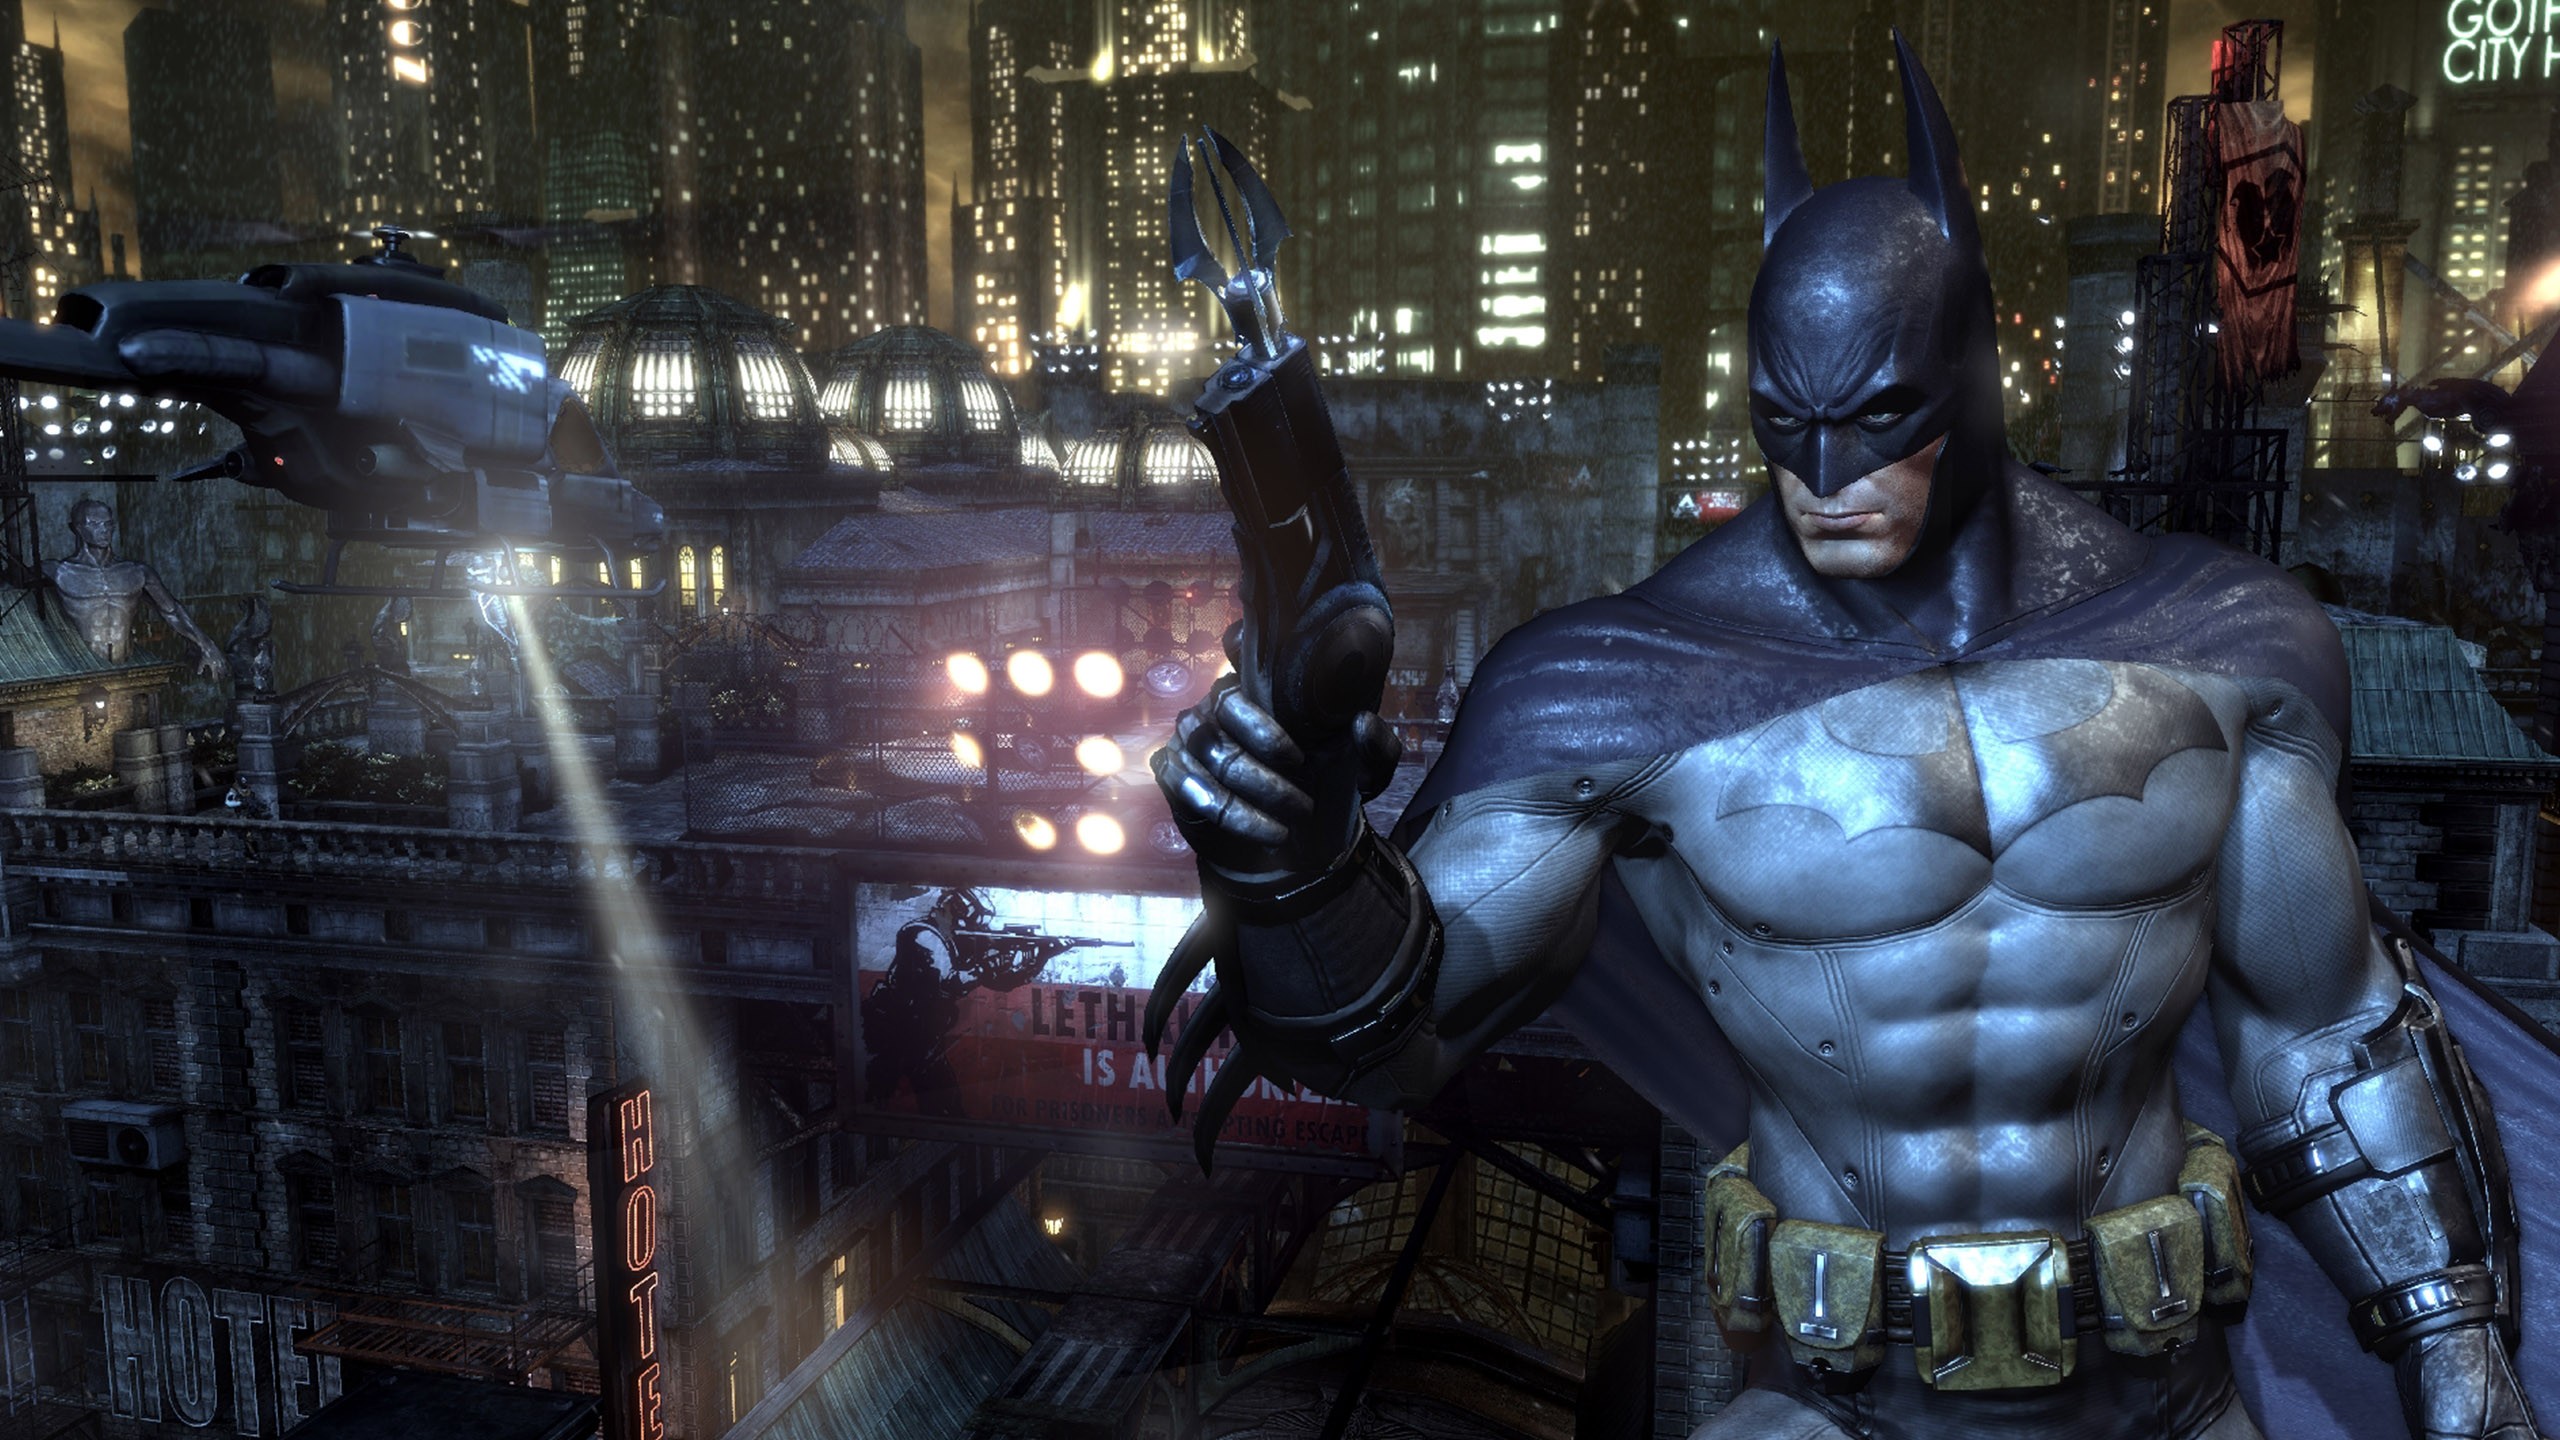 General 2560x1440 Batman Batman: Arkham City video games superhero DC Comics